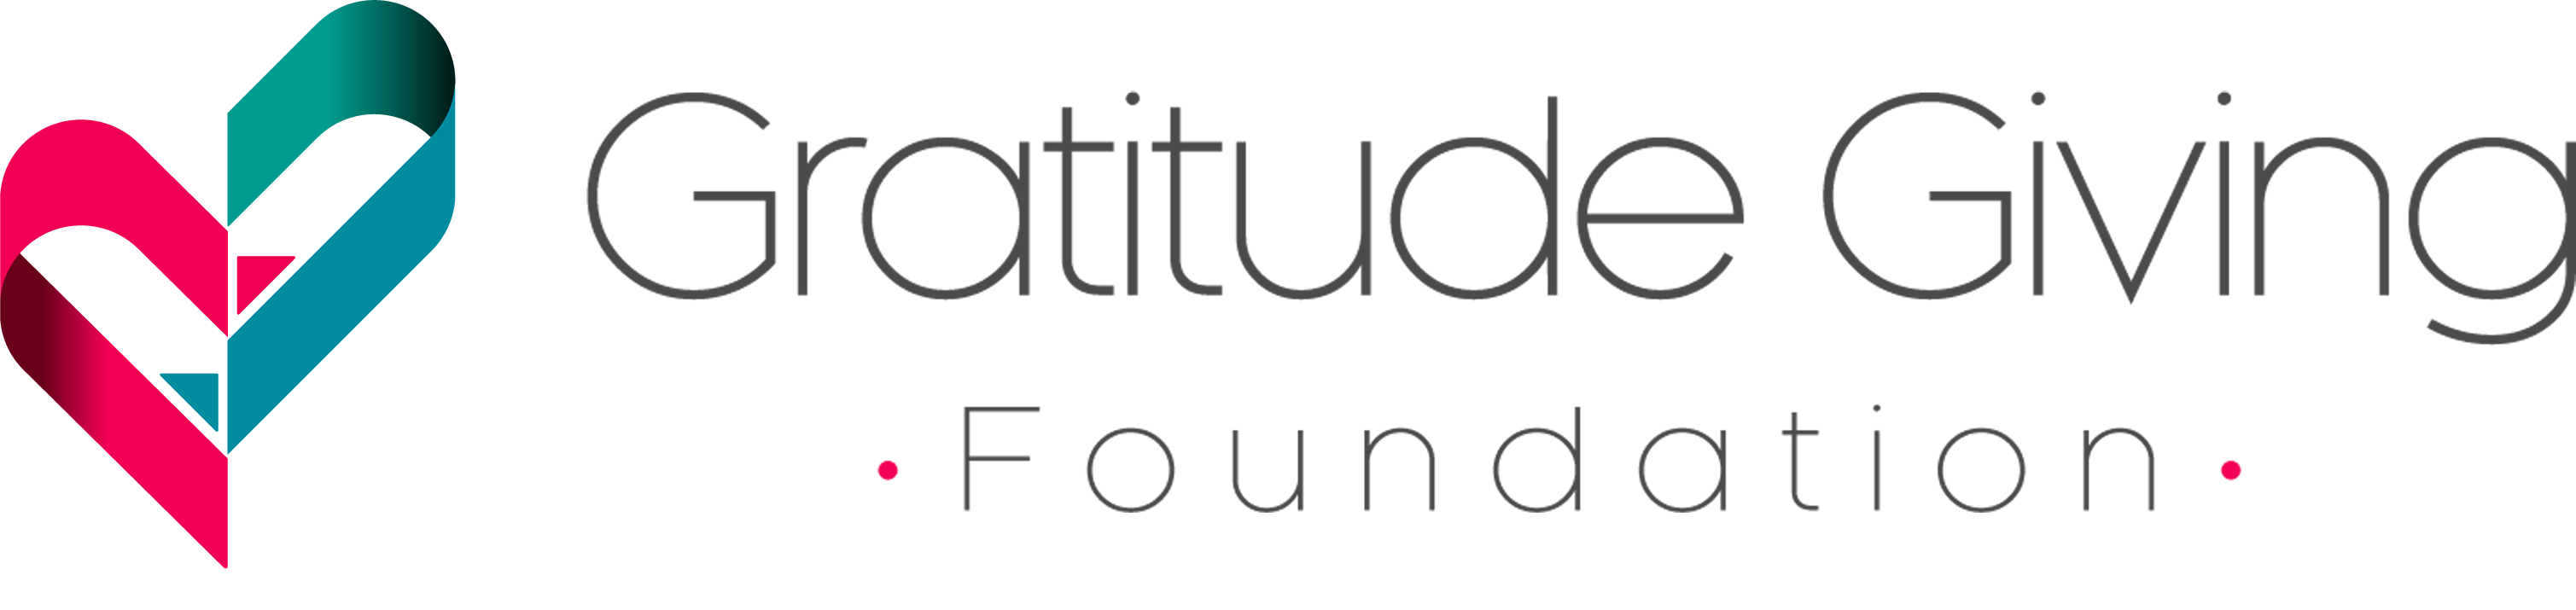 Gratitude Giving Foundation | Español